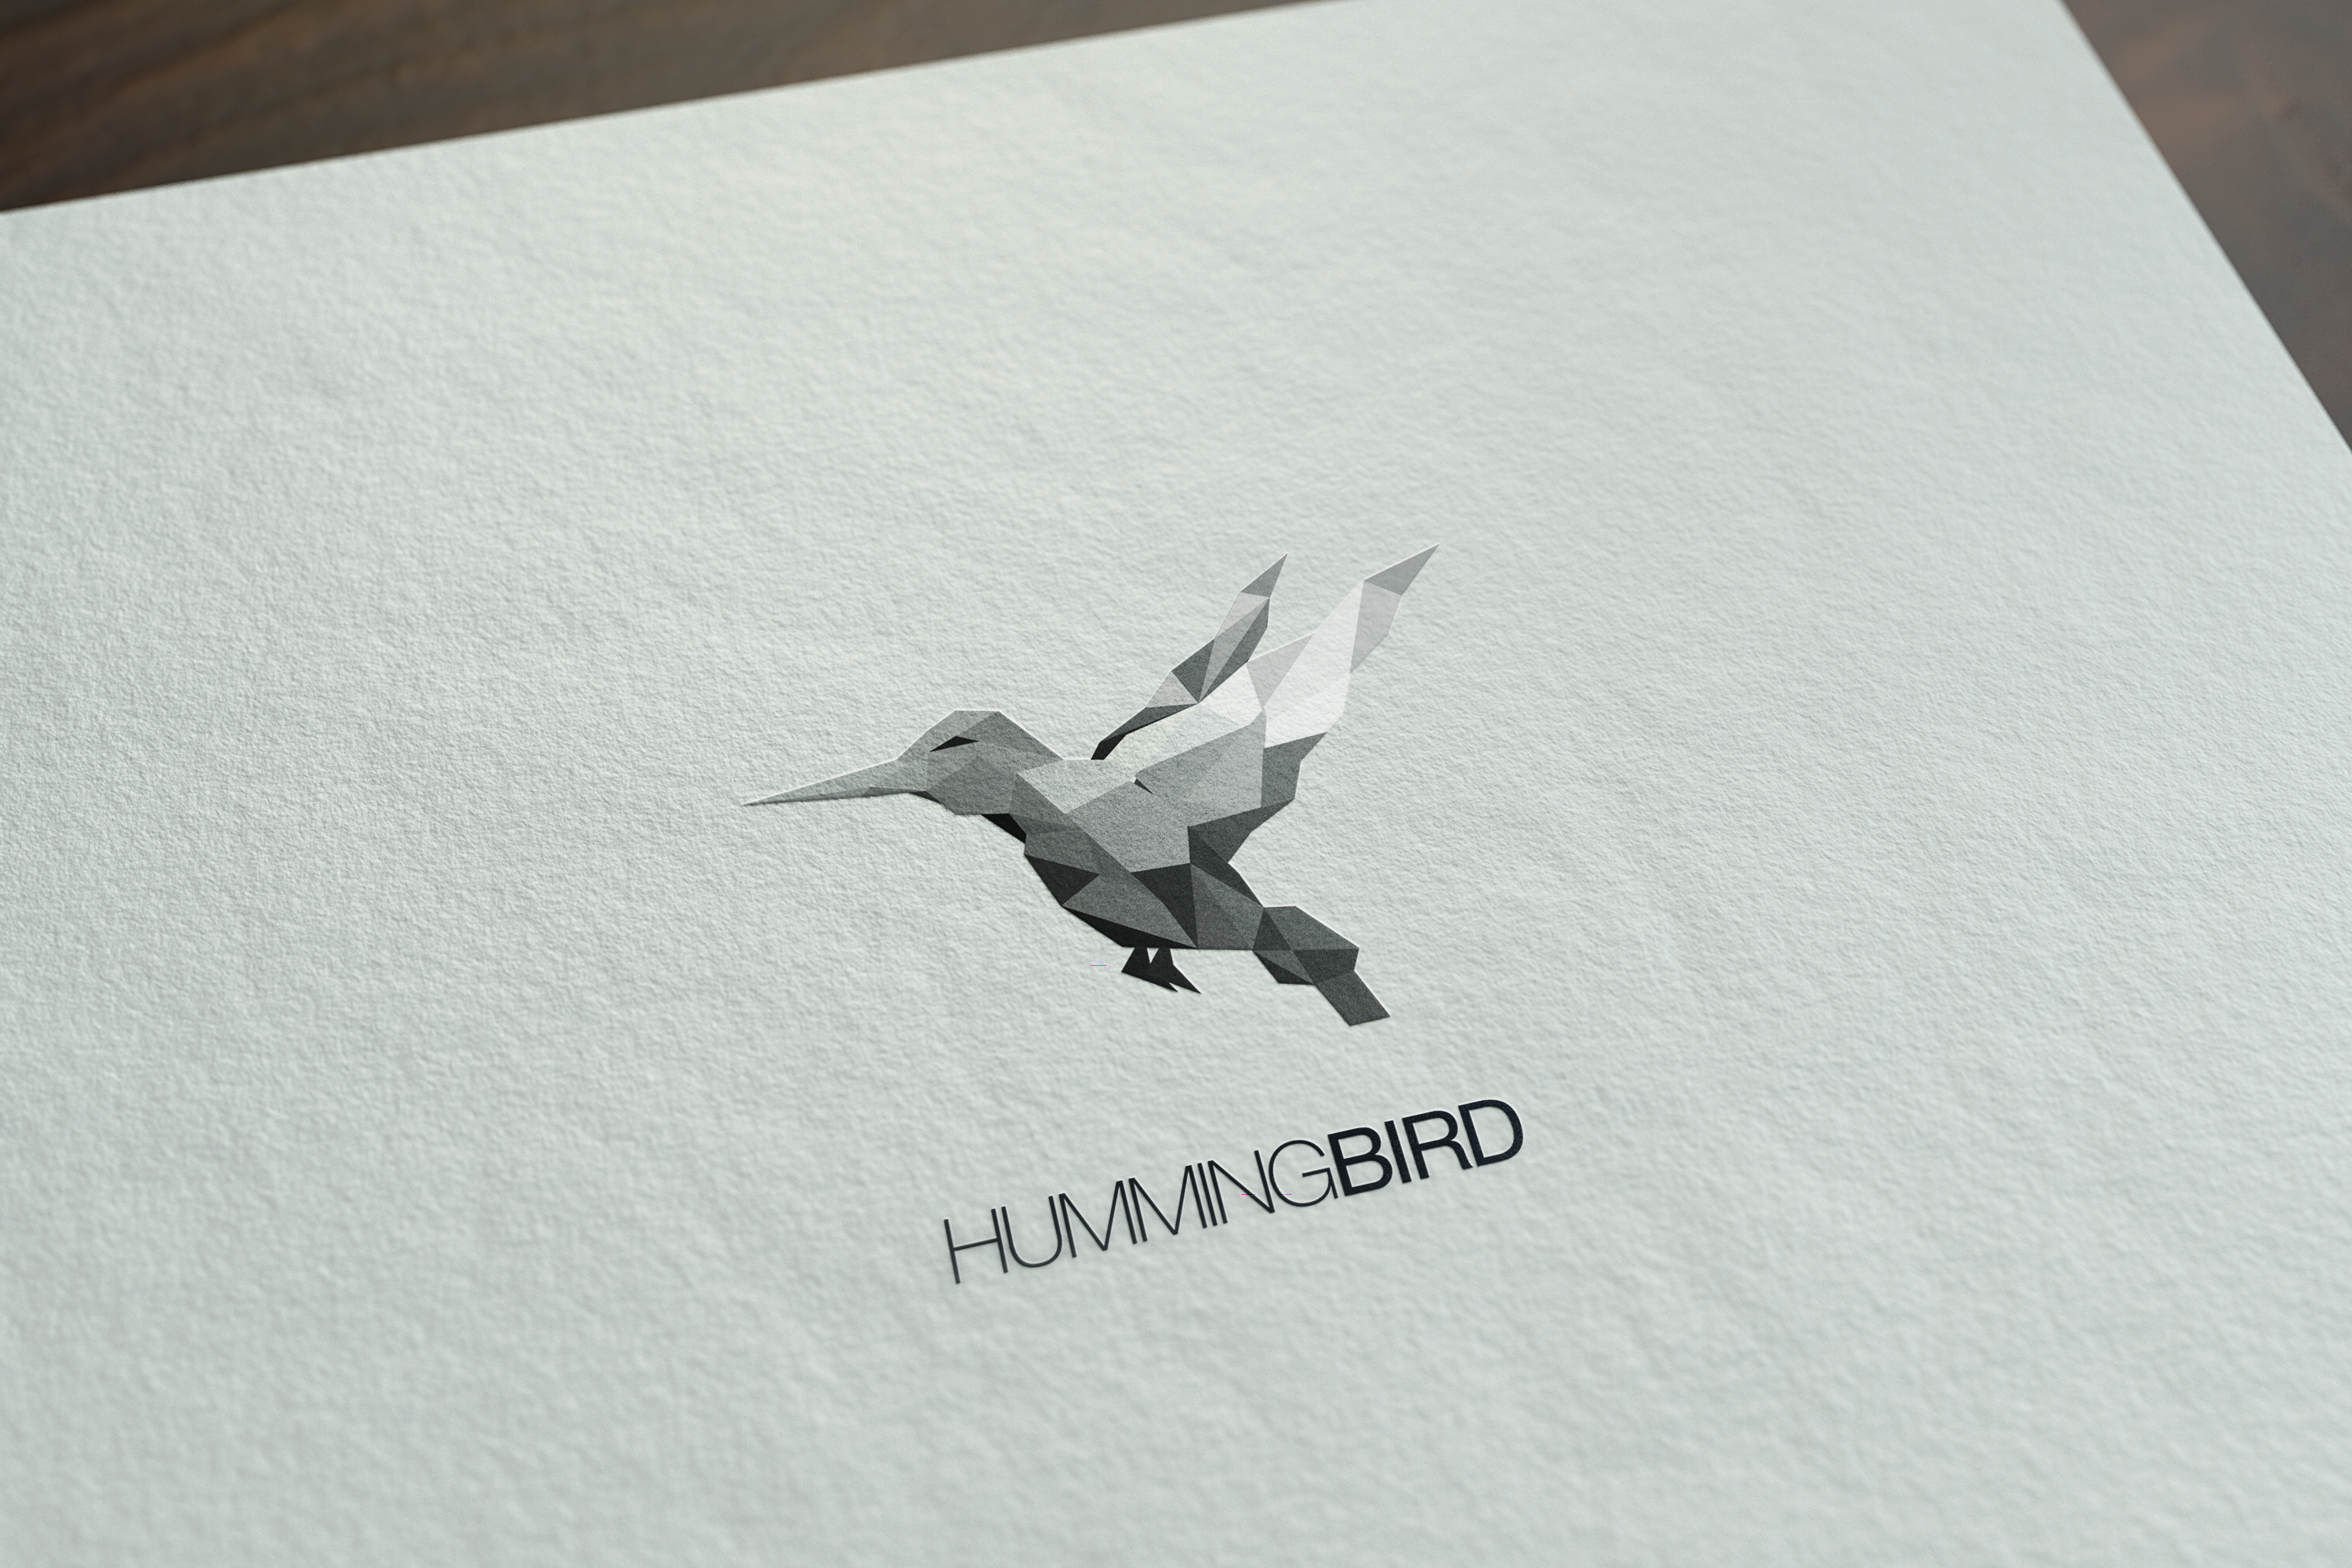 Hummingbird - identyfikacja wizualna